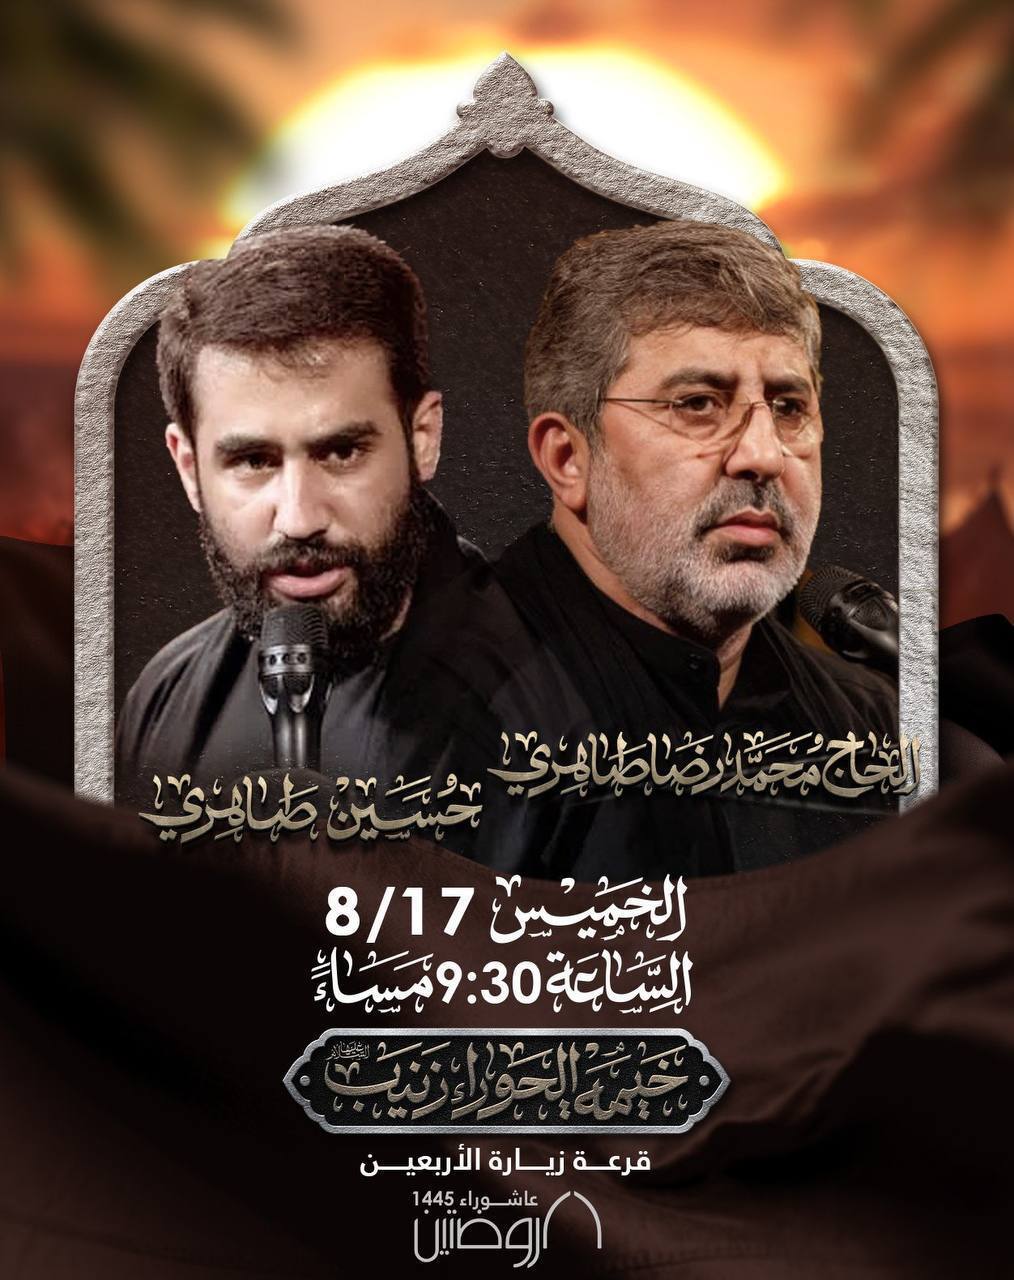 حاج محمدرضا طاهری و کربلایی حسین طاهری در بیروت لبنان مرثیه خوانی می‌کنند